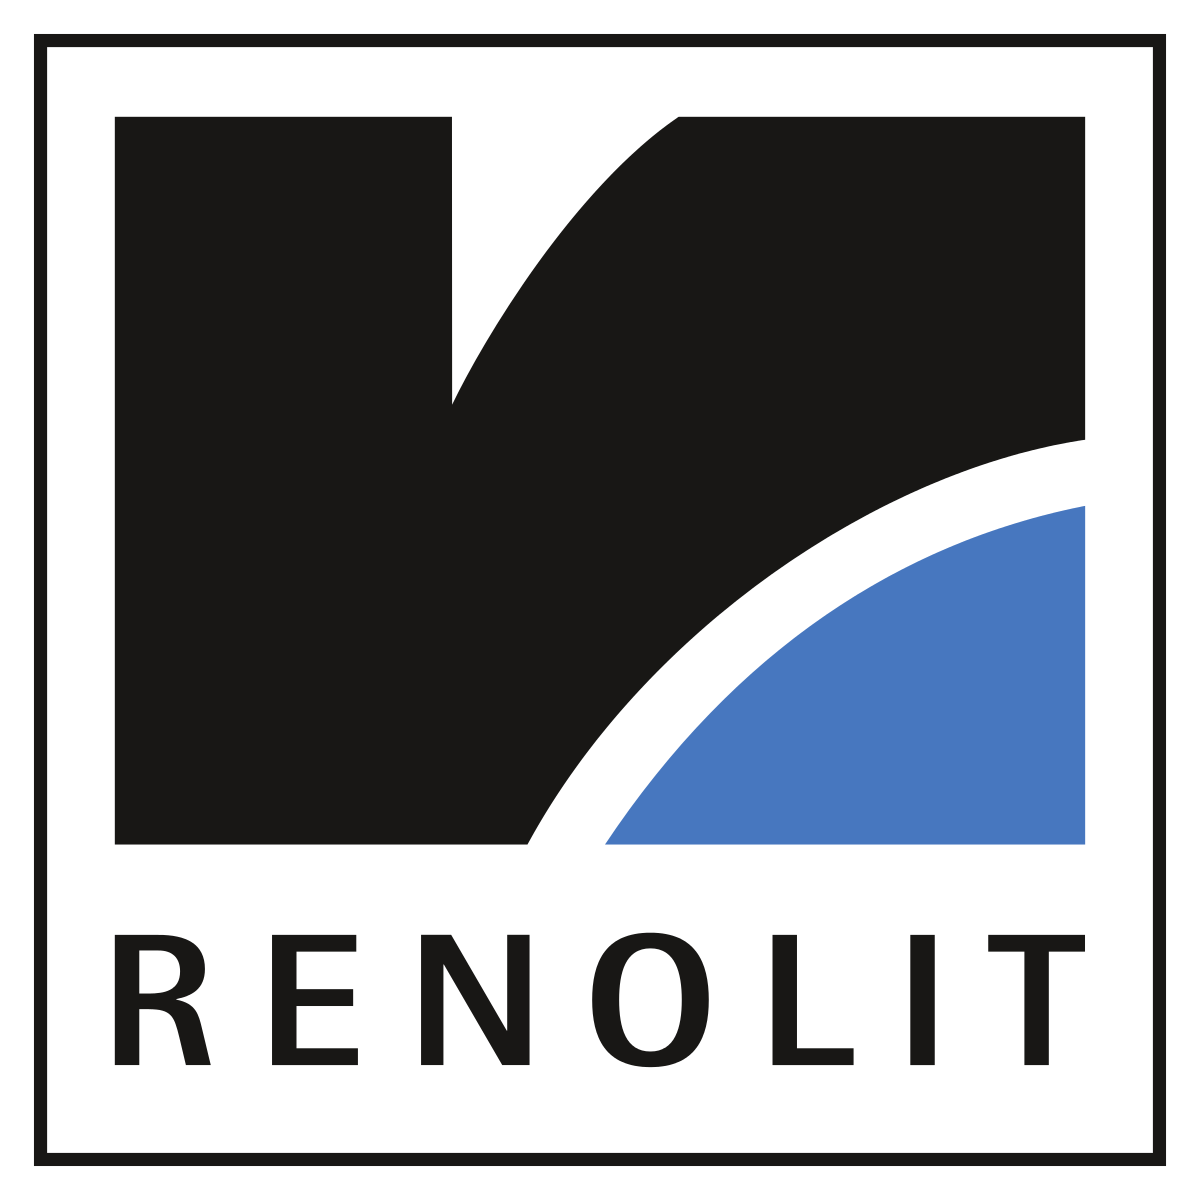 Renolit - натяжные потолки